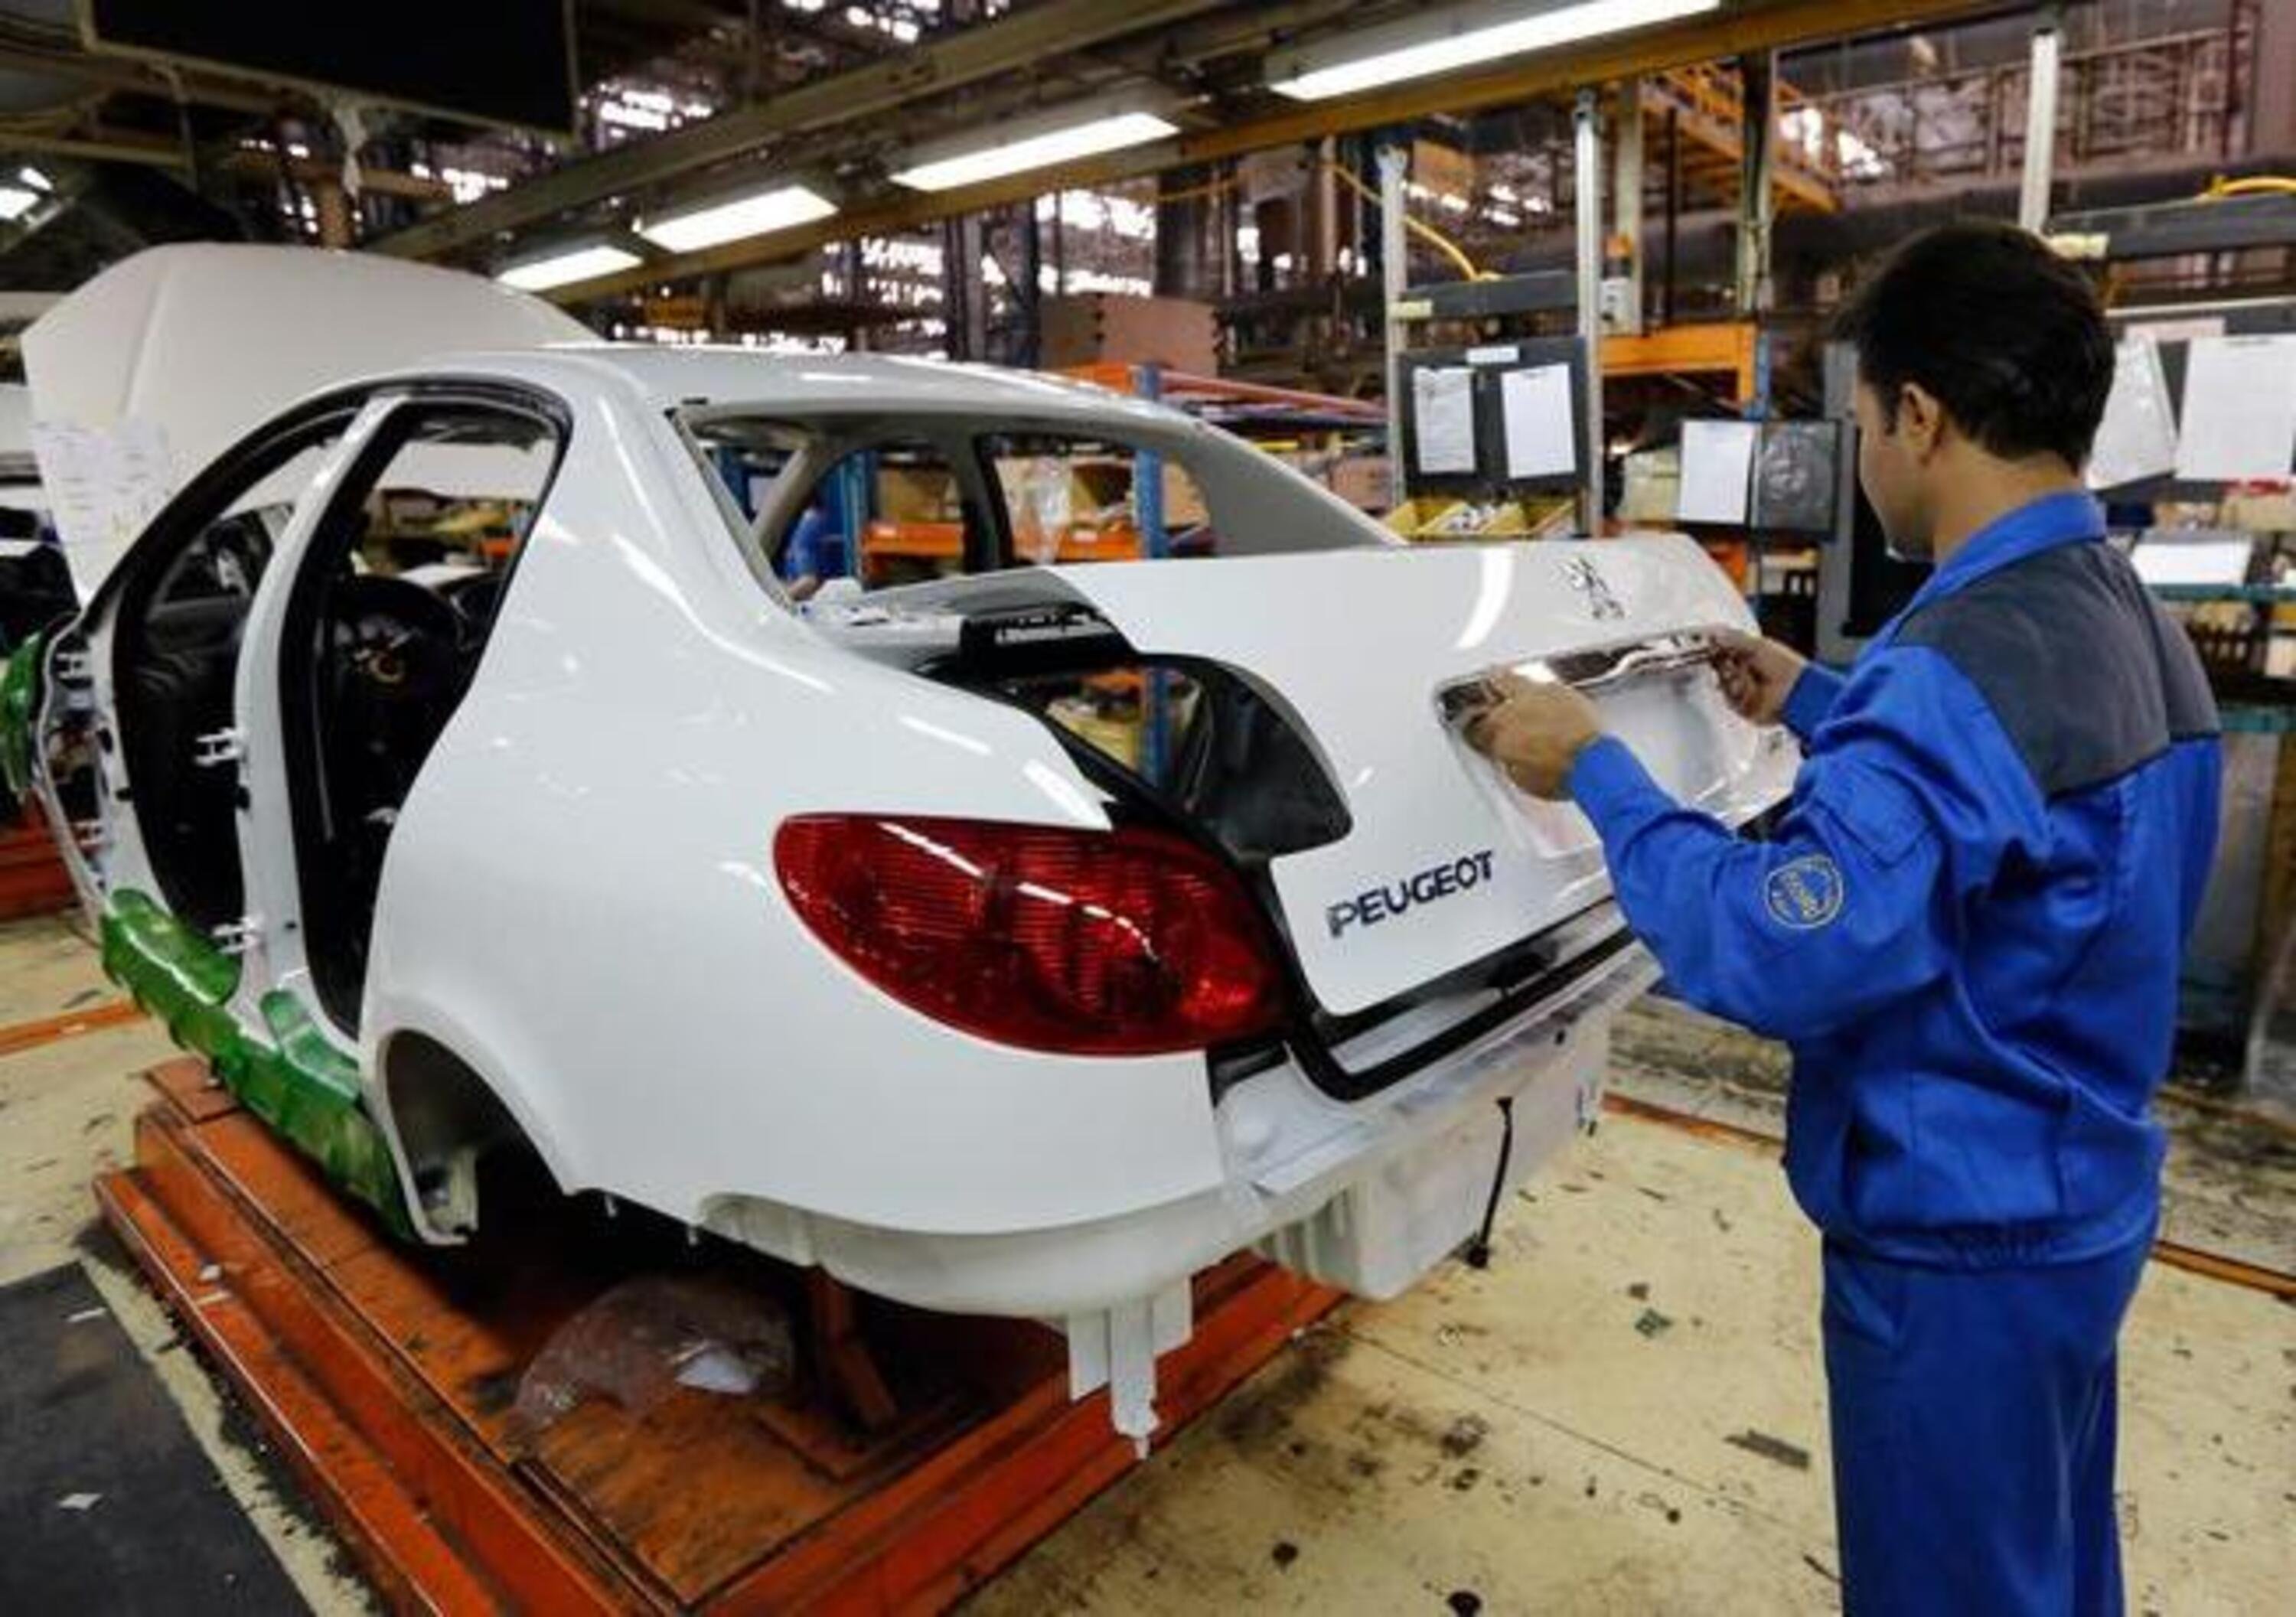 Peugeot e Khodro: firmato accordo per ritorno alla produzione in Iran